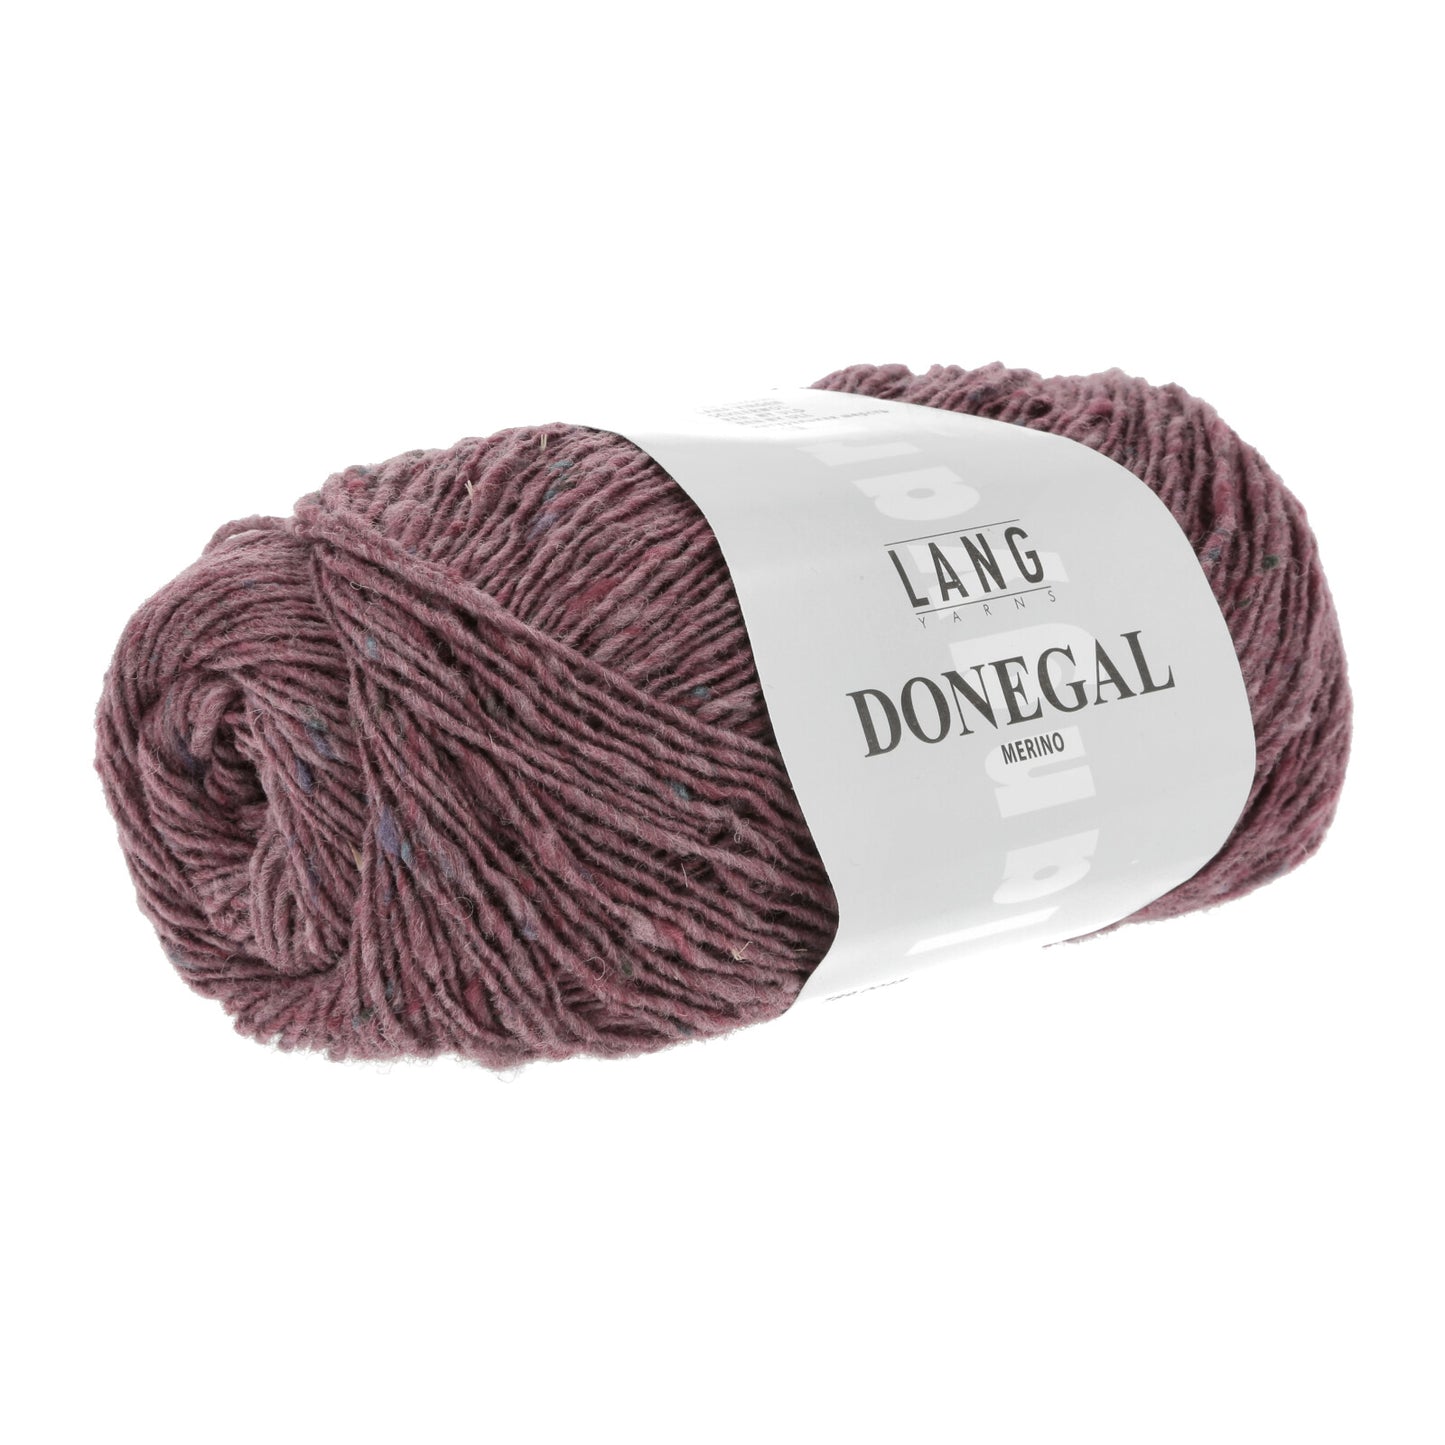 Donegal | Lang Yarns